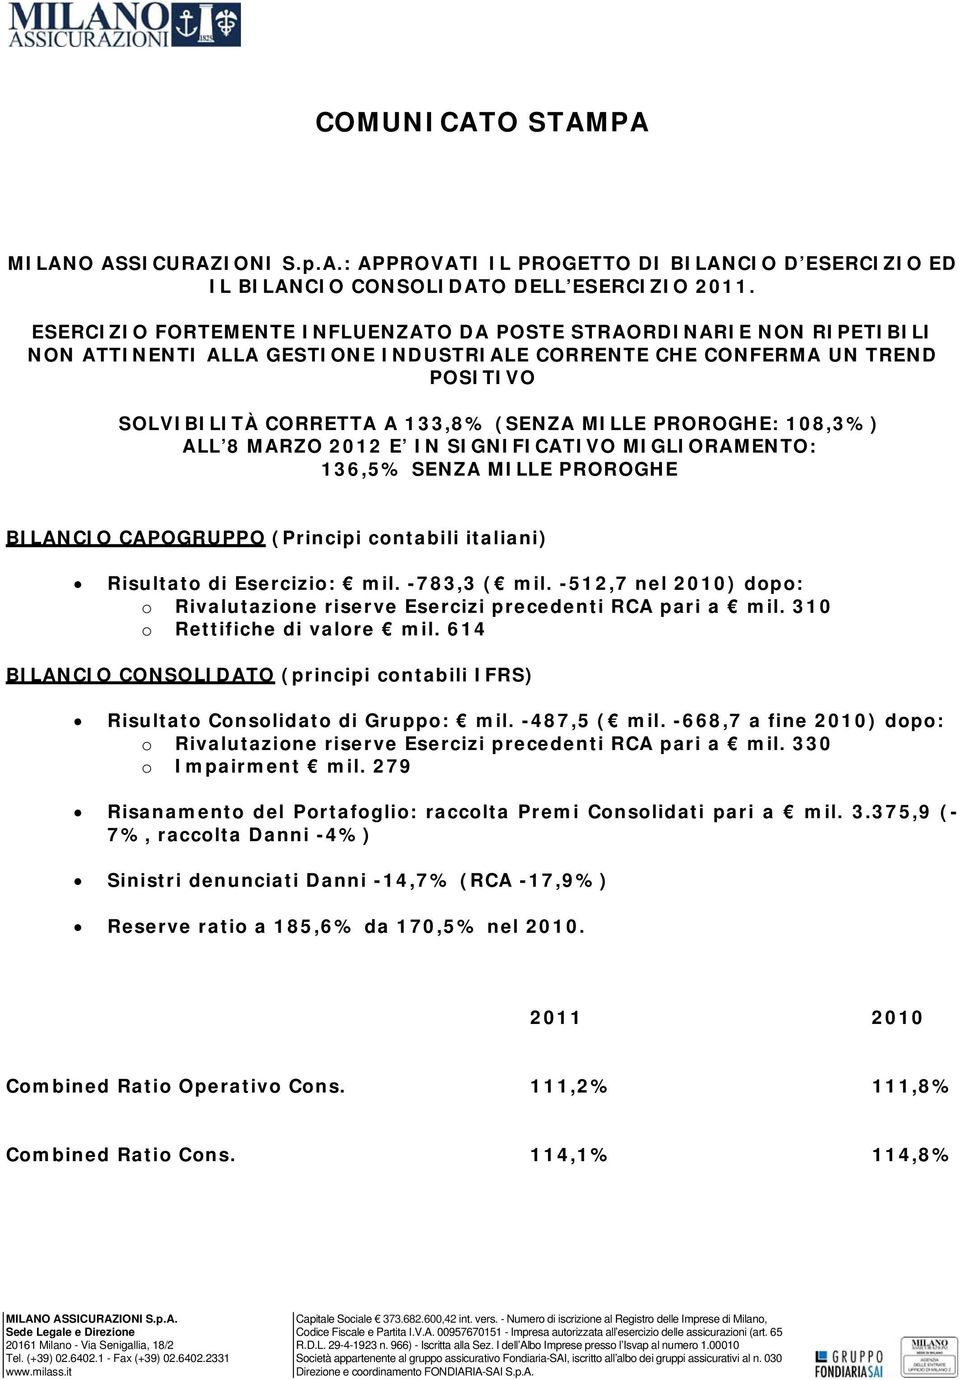 PROROGHE: 108,3%) ALL 8 MARZO 2012 E IN SIGNIFICATIVO MIGLIORAMENTO: 136,5% SENZA MILLE PROROGHE BILANCIO CAPOGRUPPO (Principi contabili italiani) Risultato di Esercizio: mil. -783,3 ( mil.